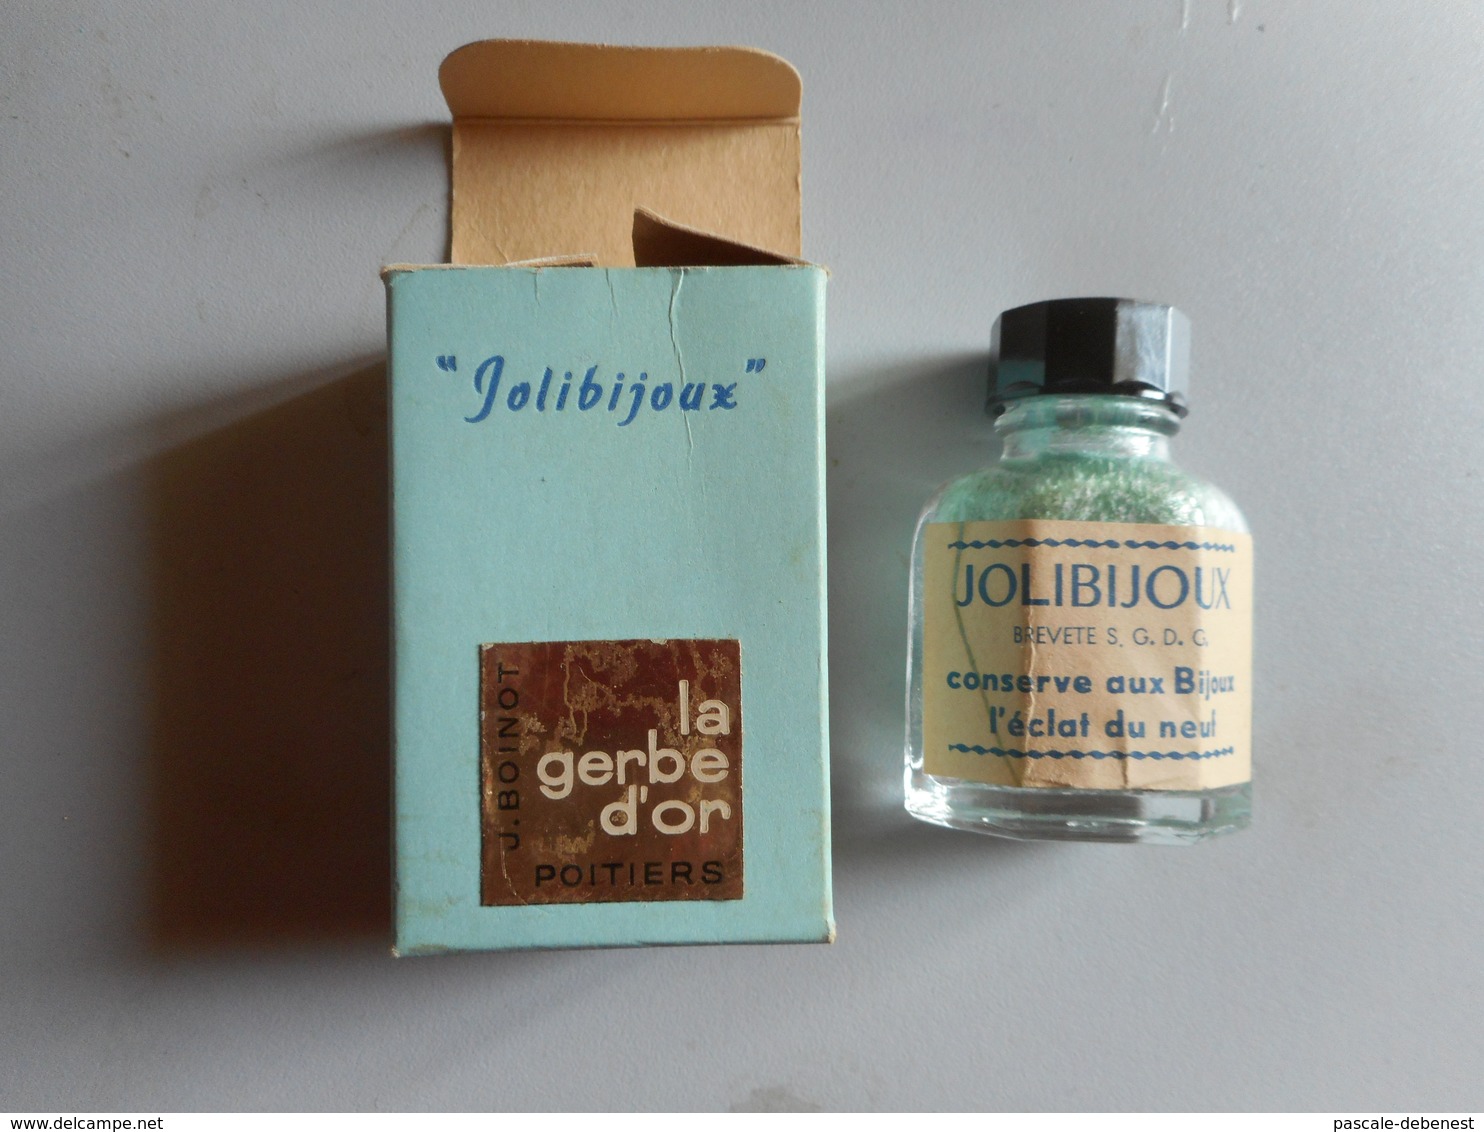 Ancien Flacon De Produit "jolibiloux" - Supplies And Equipment